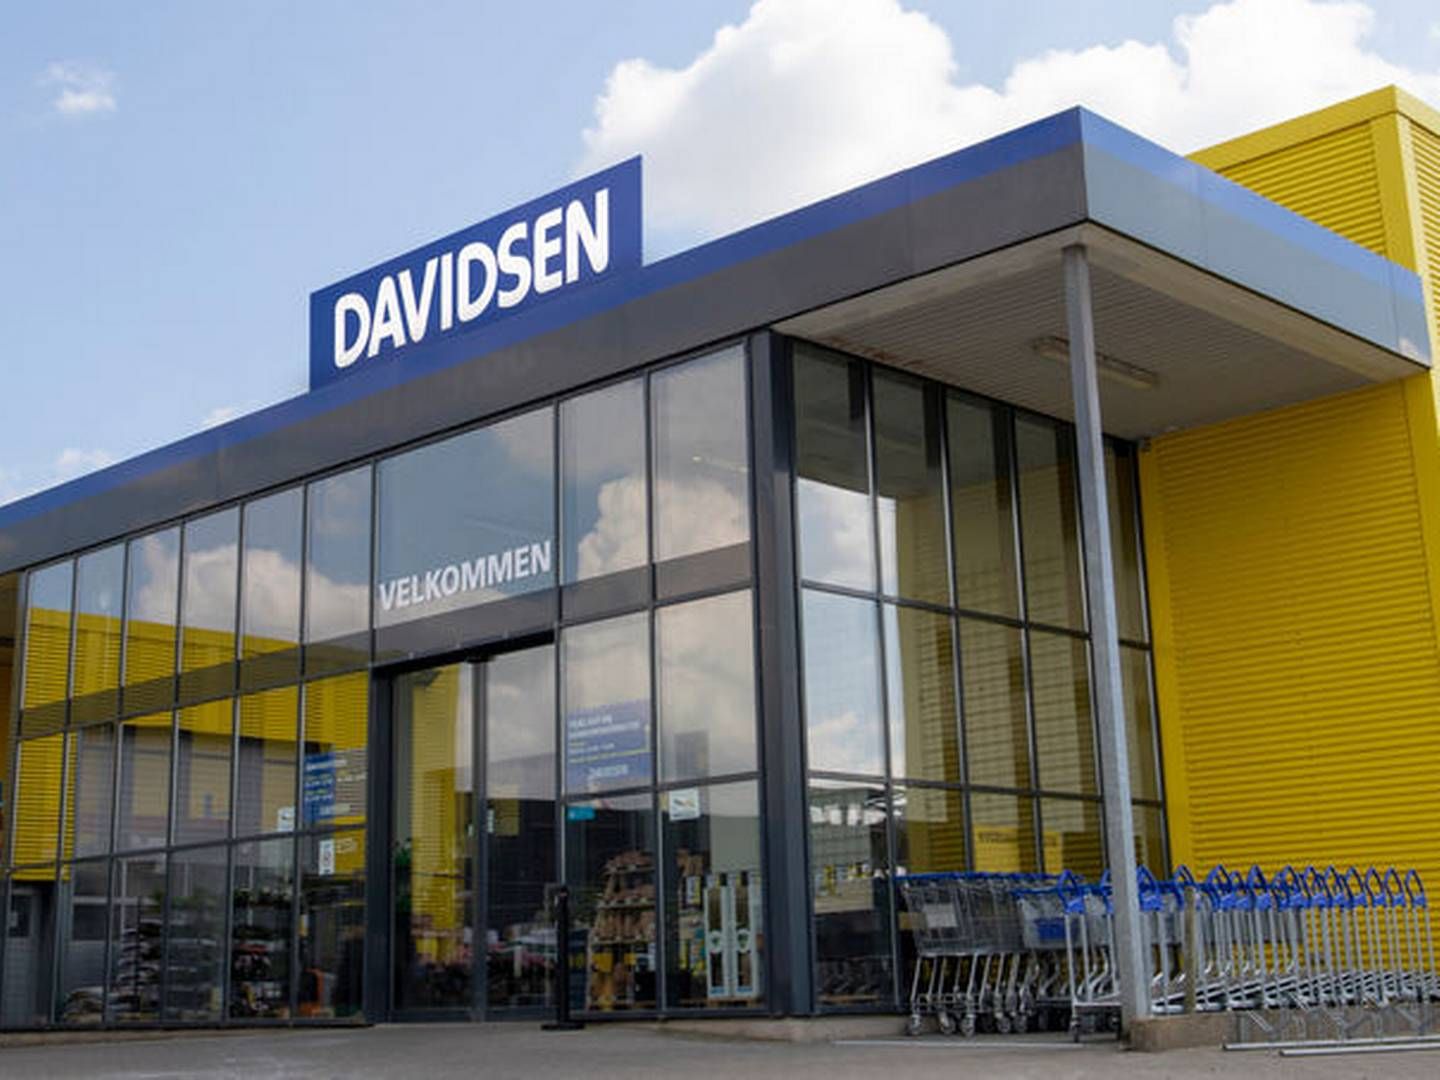 Davidsens Tømmerhandel har 23 butikker fordelt i Danmark og en i Grønland. | Foto: Davidsen Tømmerhandel/pr